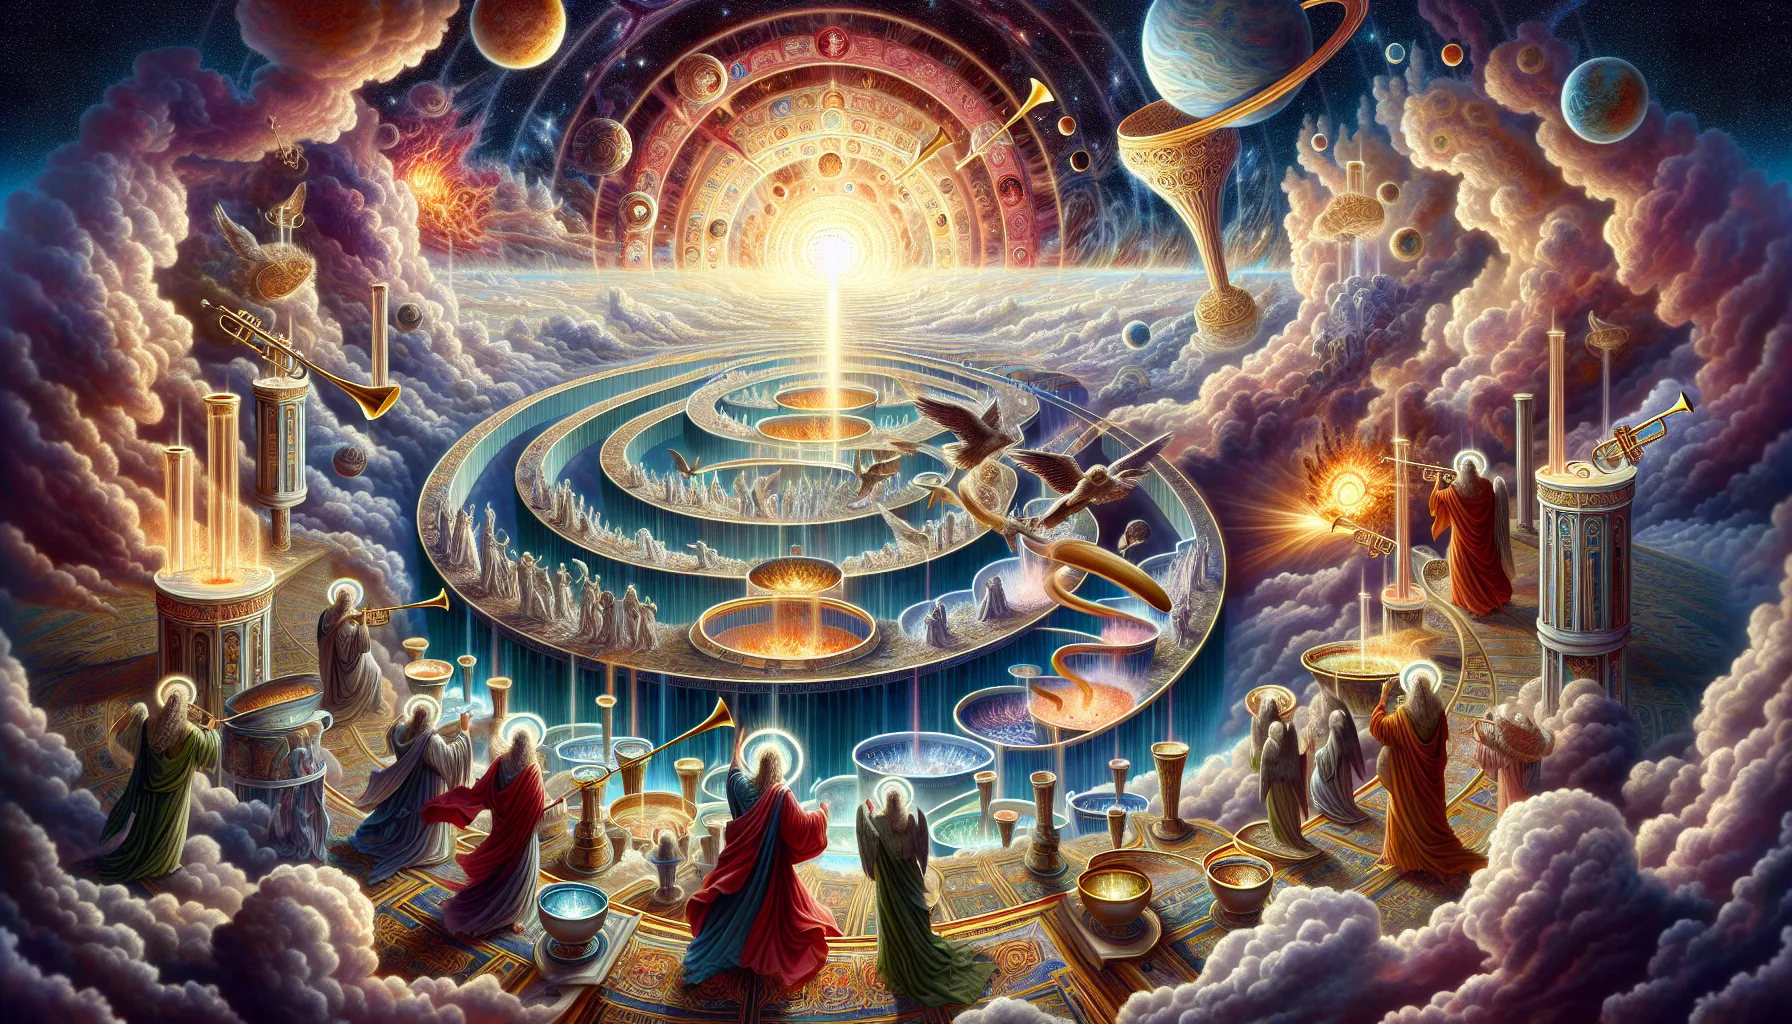 Representación simbólica de los juicios divinos en el libro de Apocalipsis: sellos